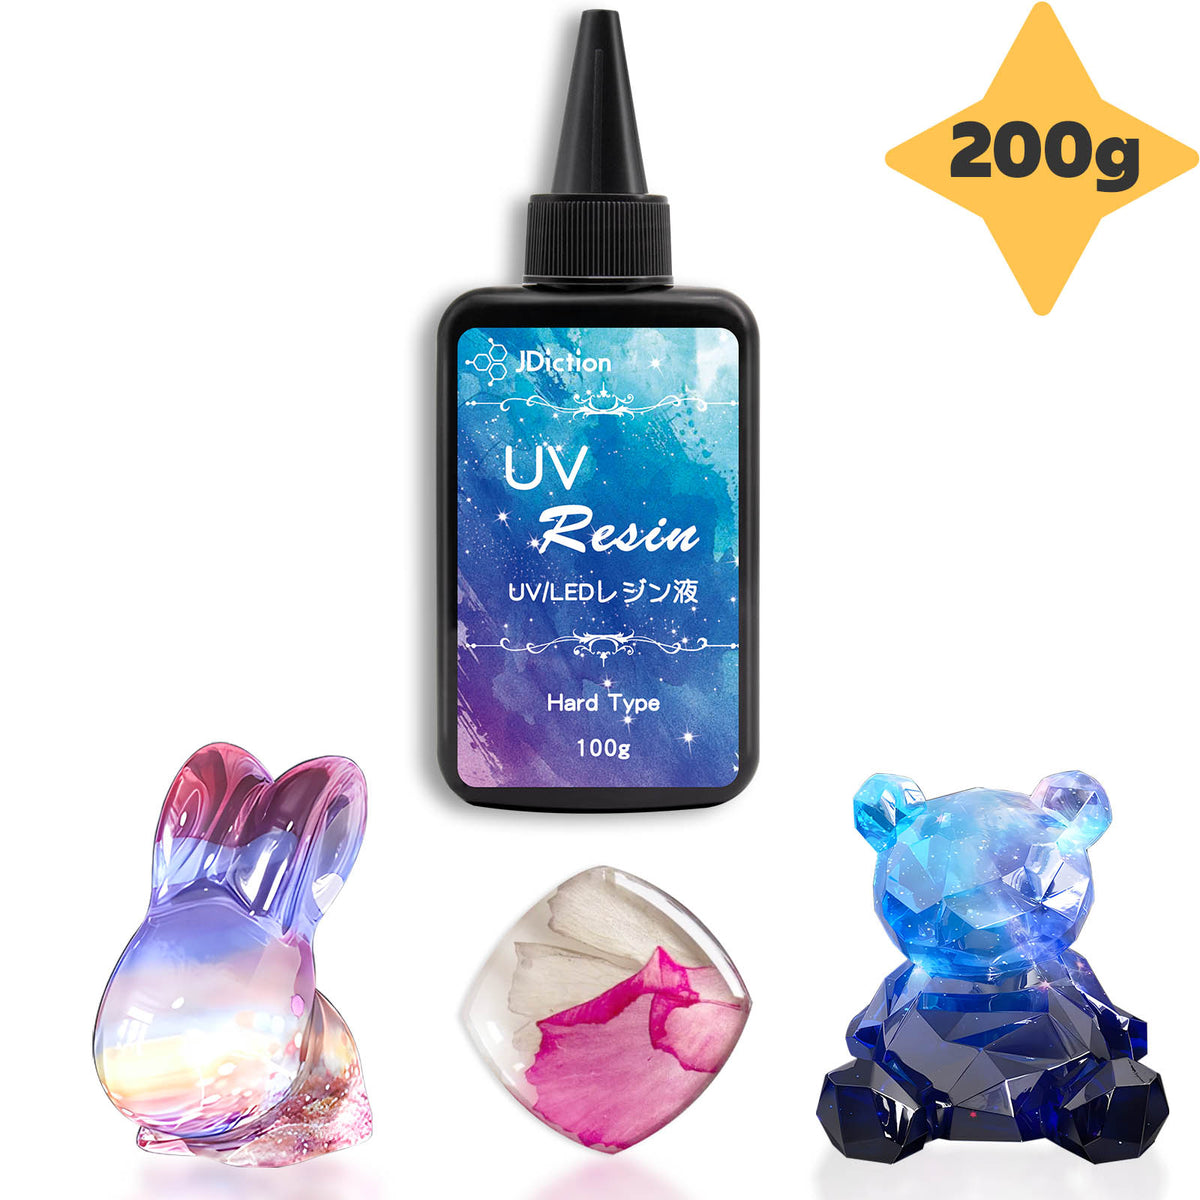 JDiction UV Resin 200g